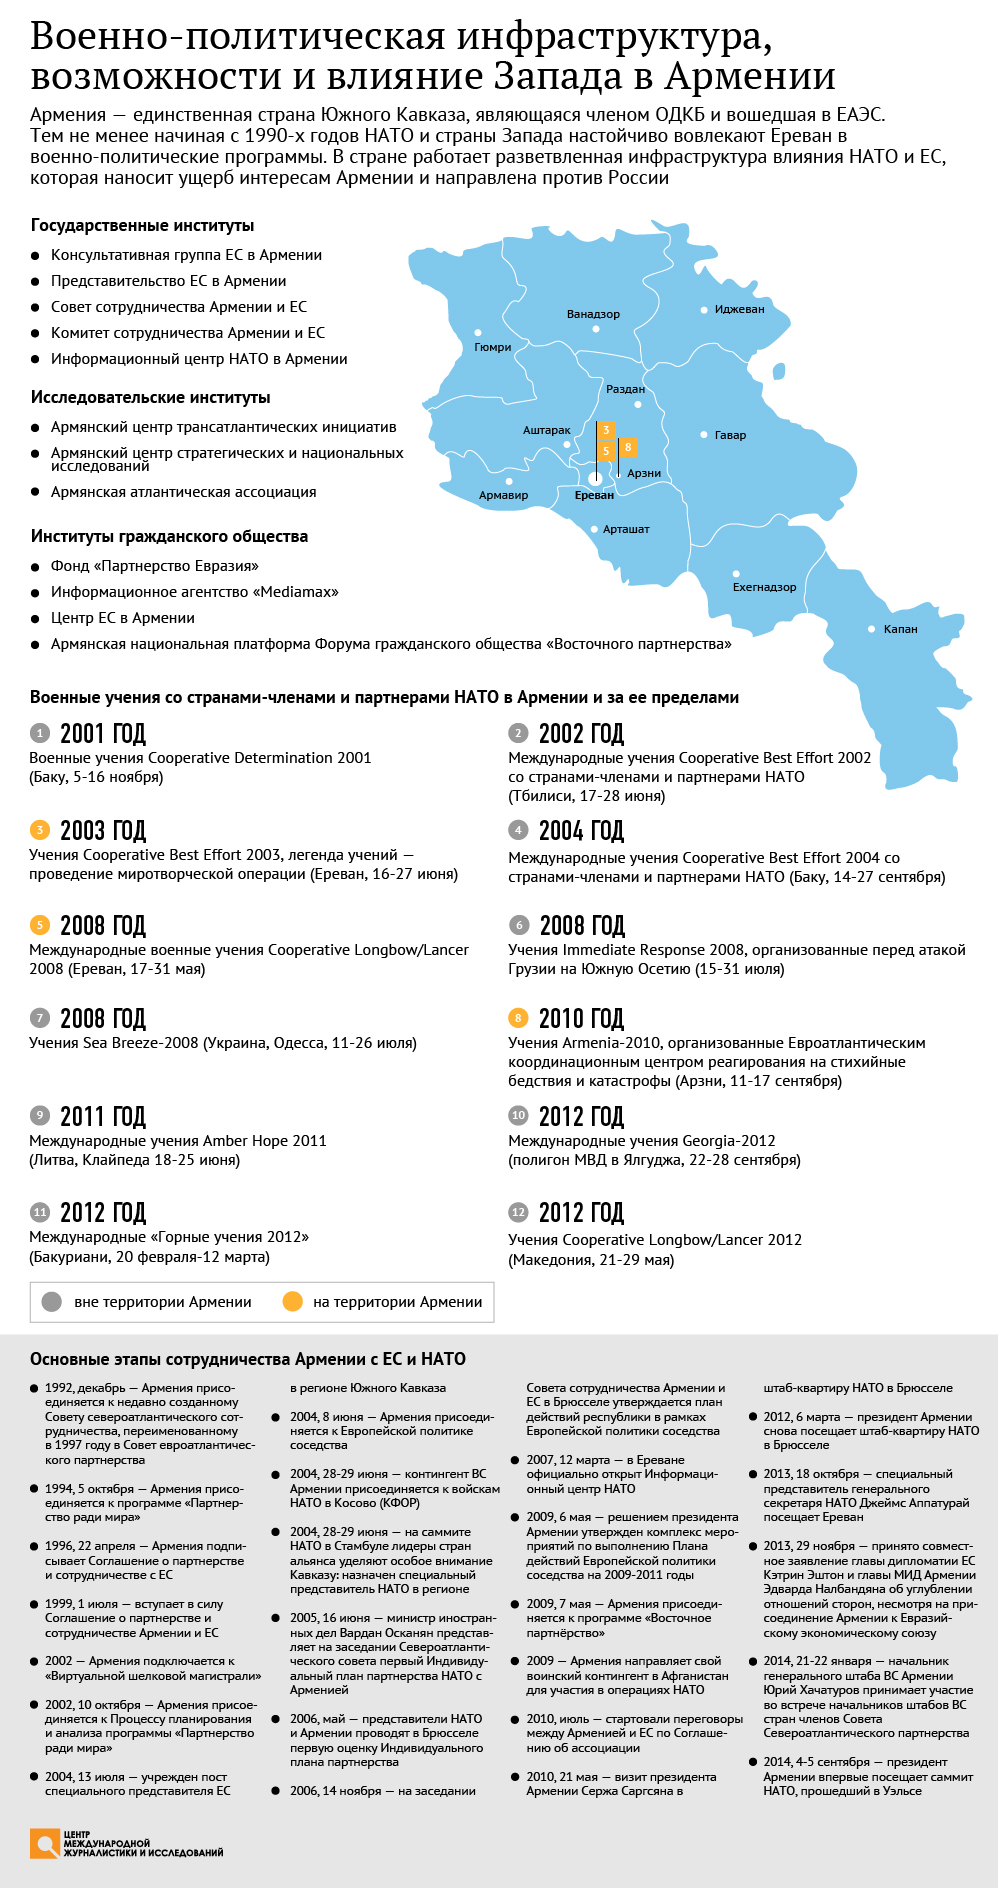 Военно-политическая инфраструктура, возможности и влияние Запада в Армении